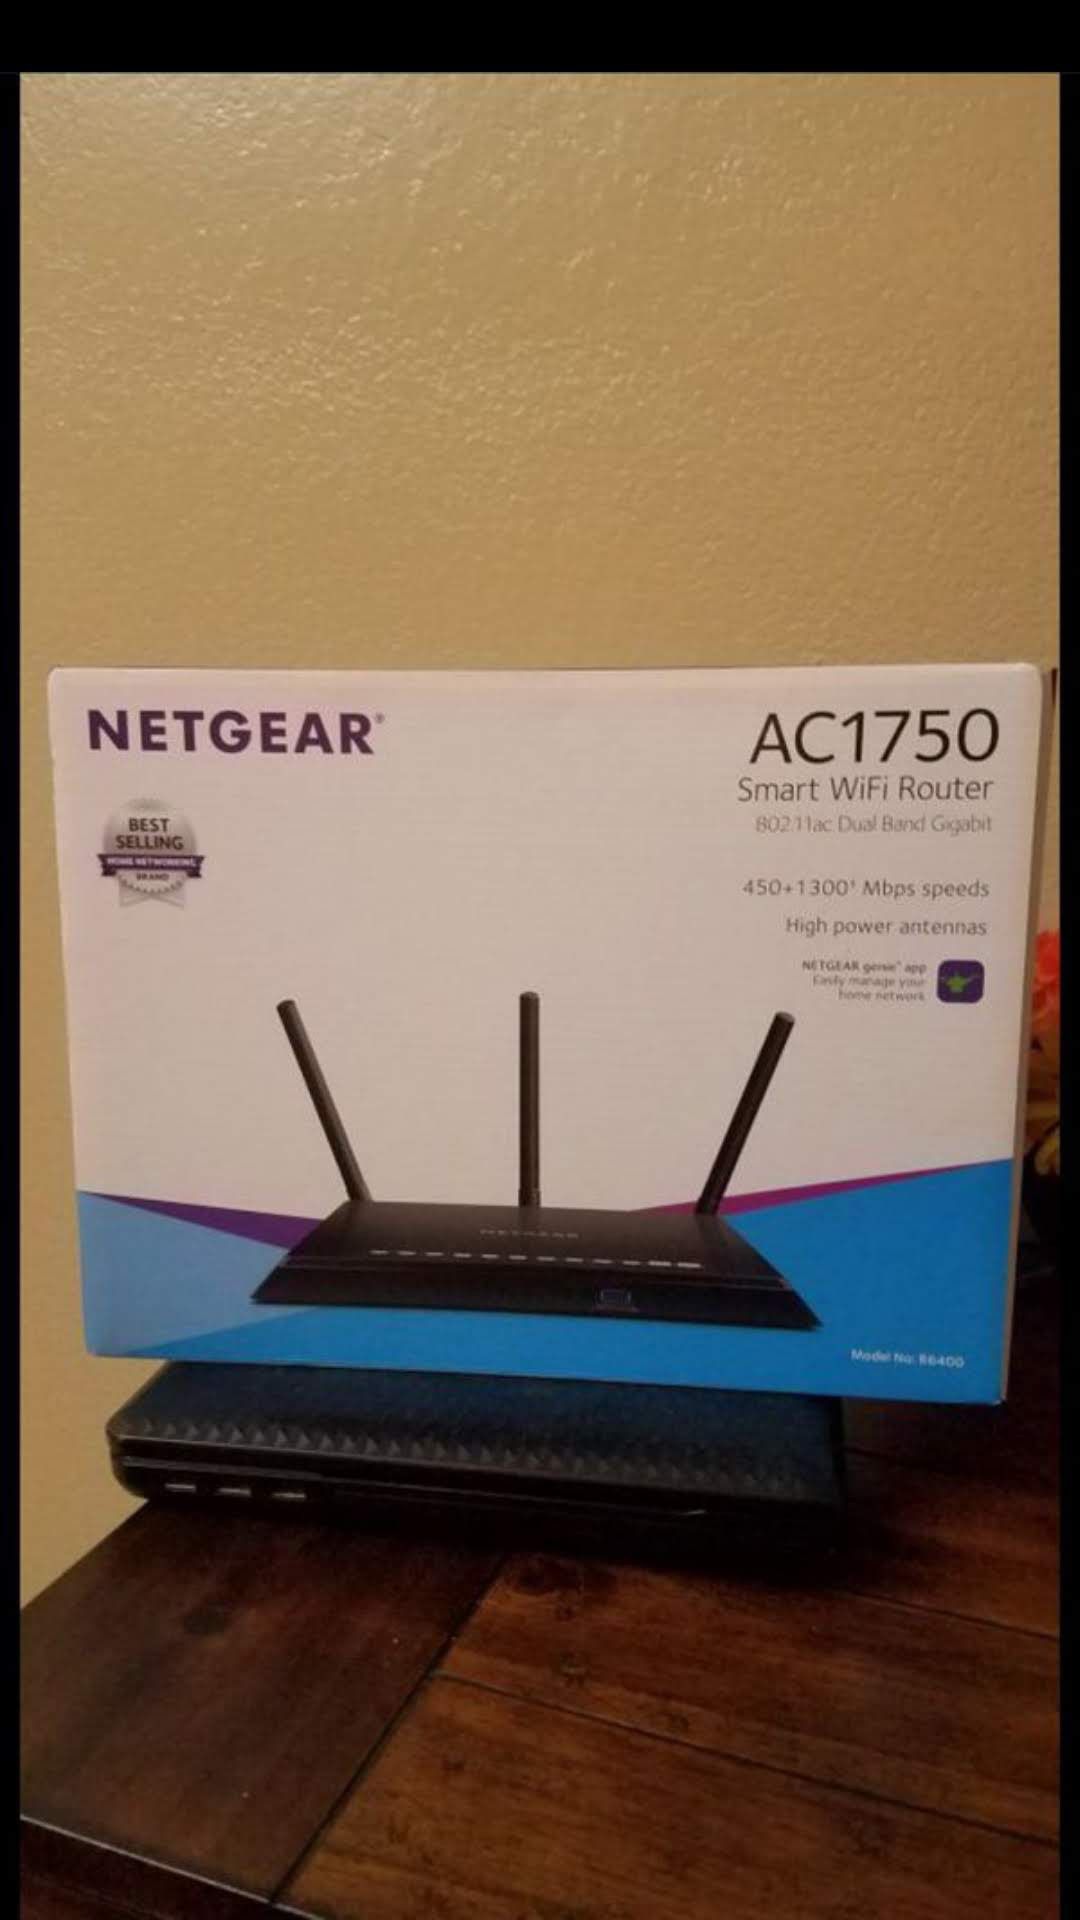 Net Gear AC1750 smart wifi router